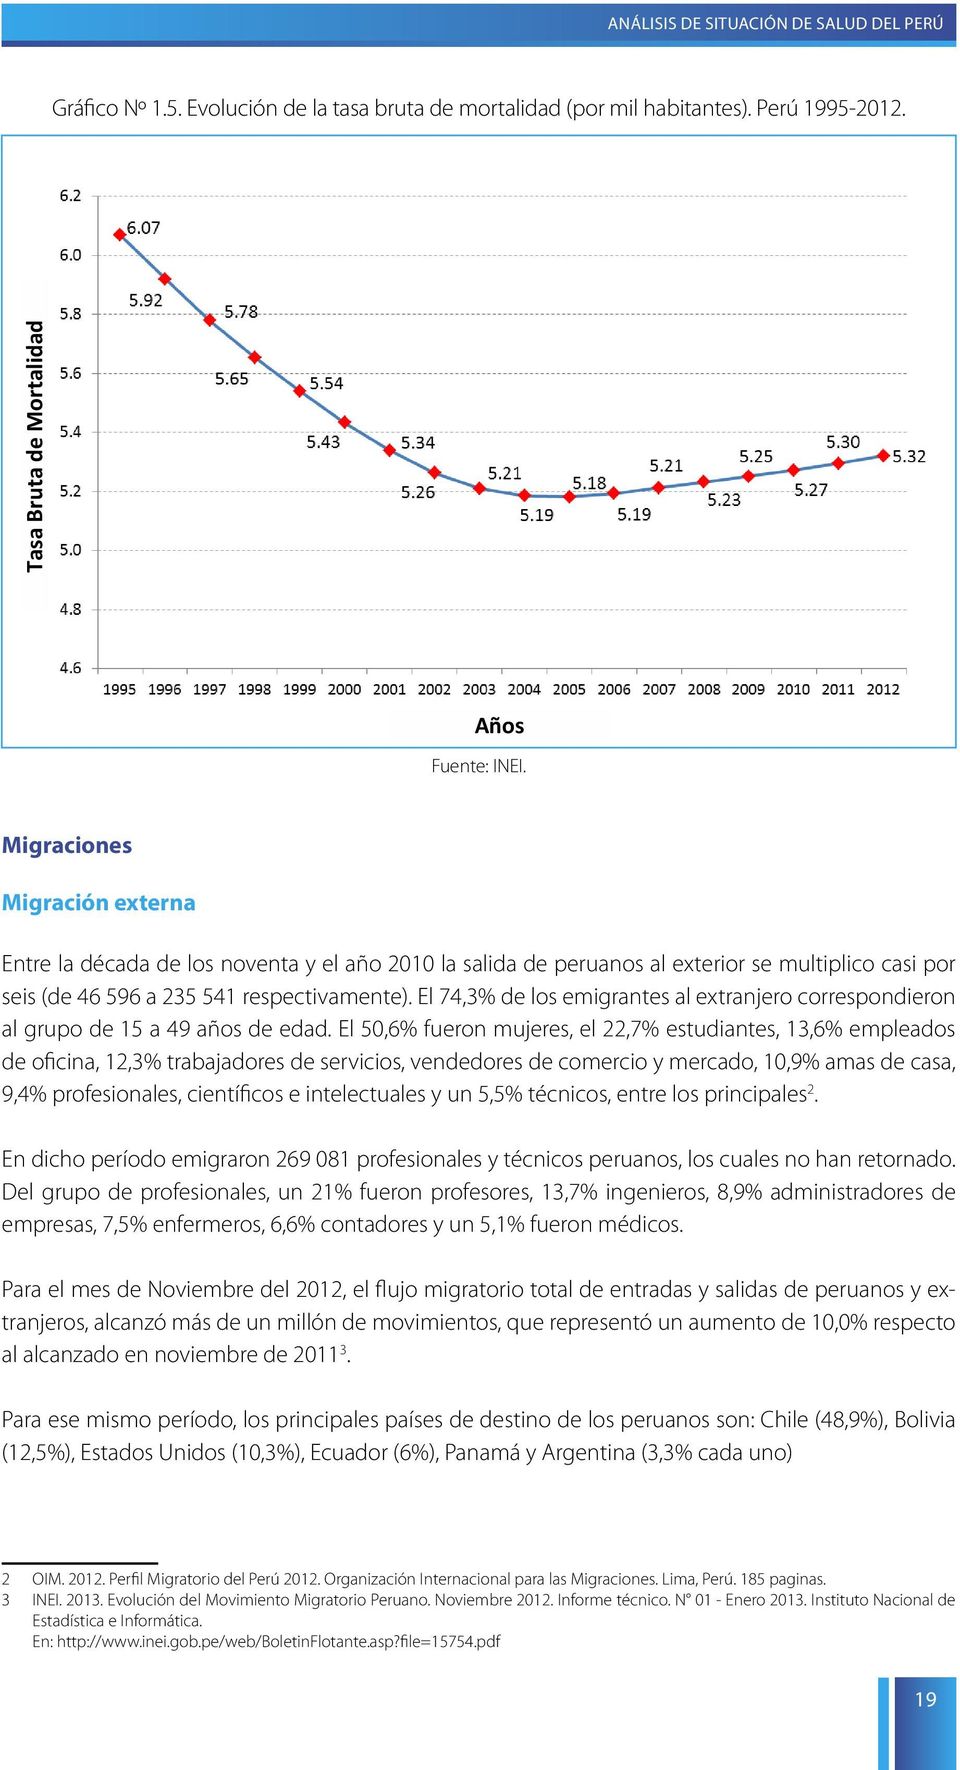 Migraciones Migraciones Migración externa Migración externa Entre la década de los noventa y el año 2010 la salida de peruanos al exterior se multiplico casi por seis (de 46 596 a 235 541